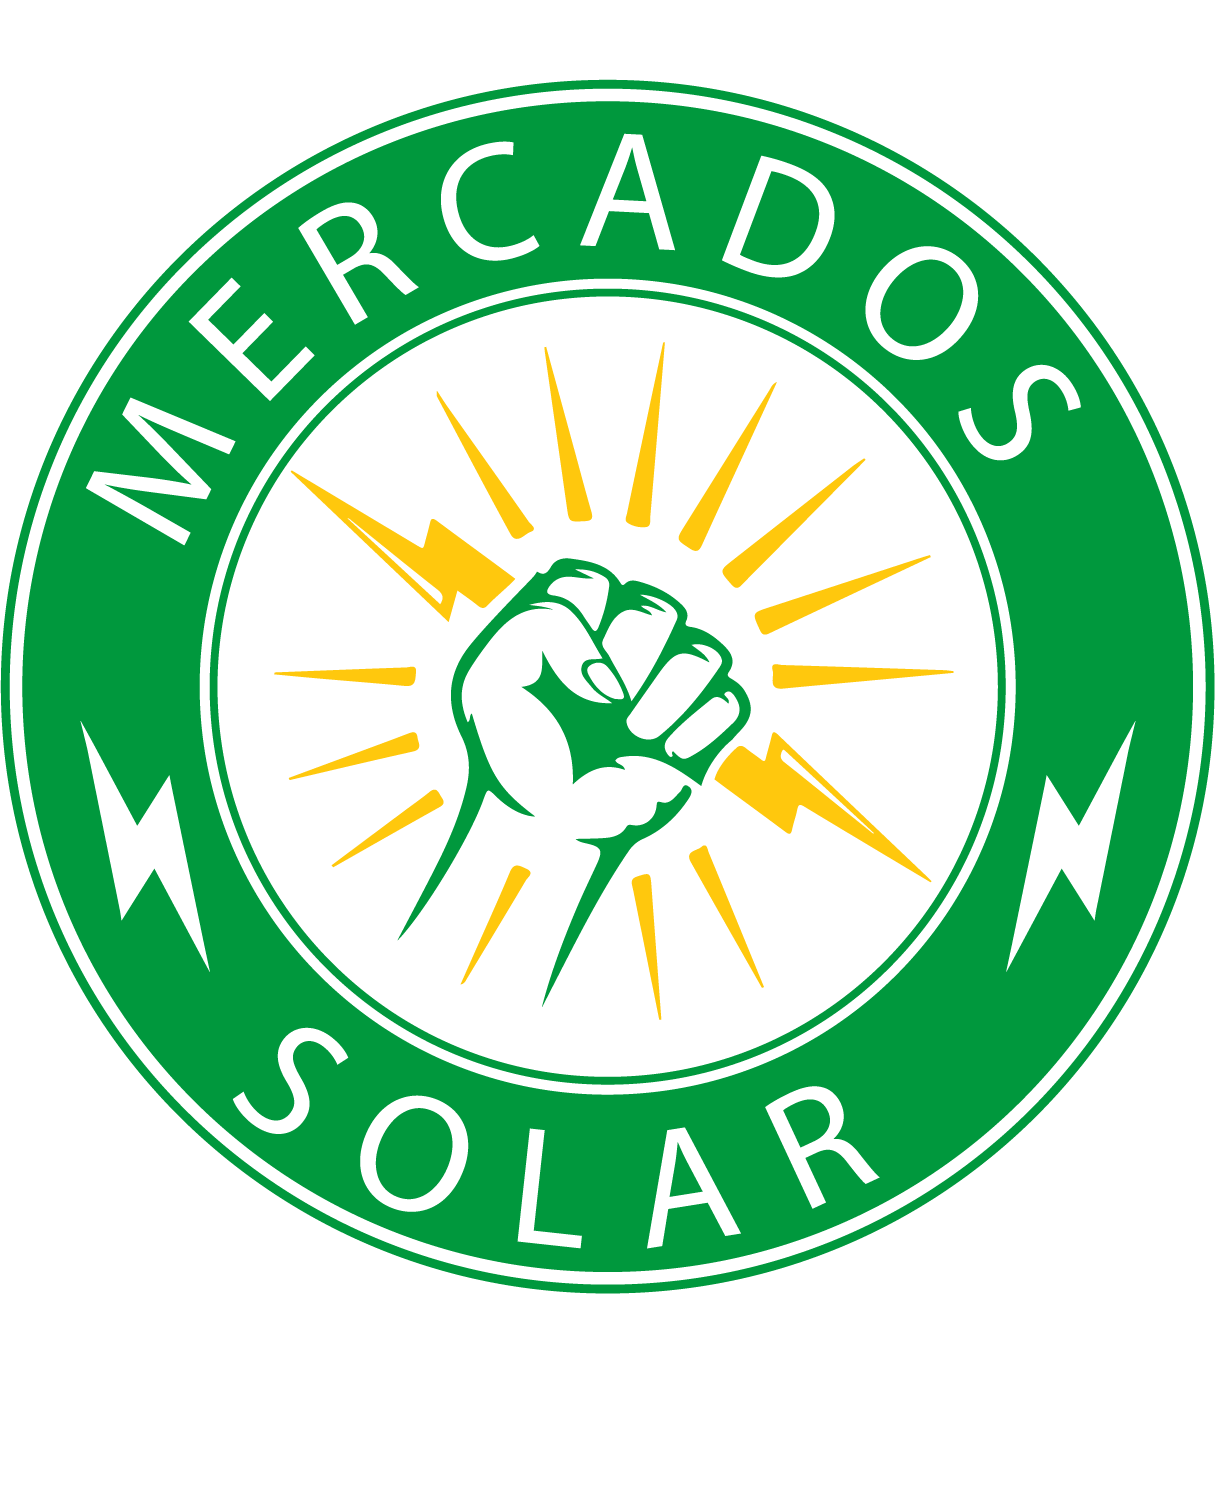 Mercados Solar